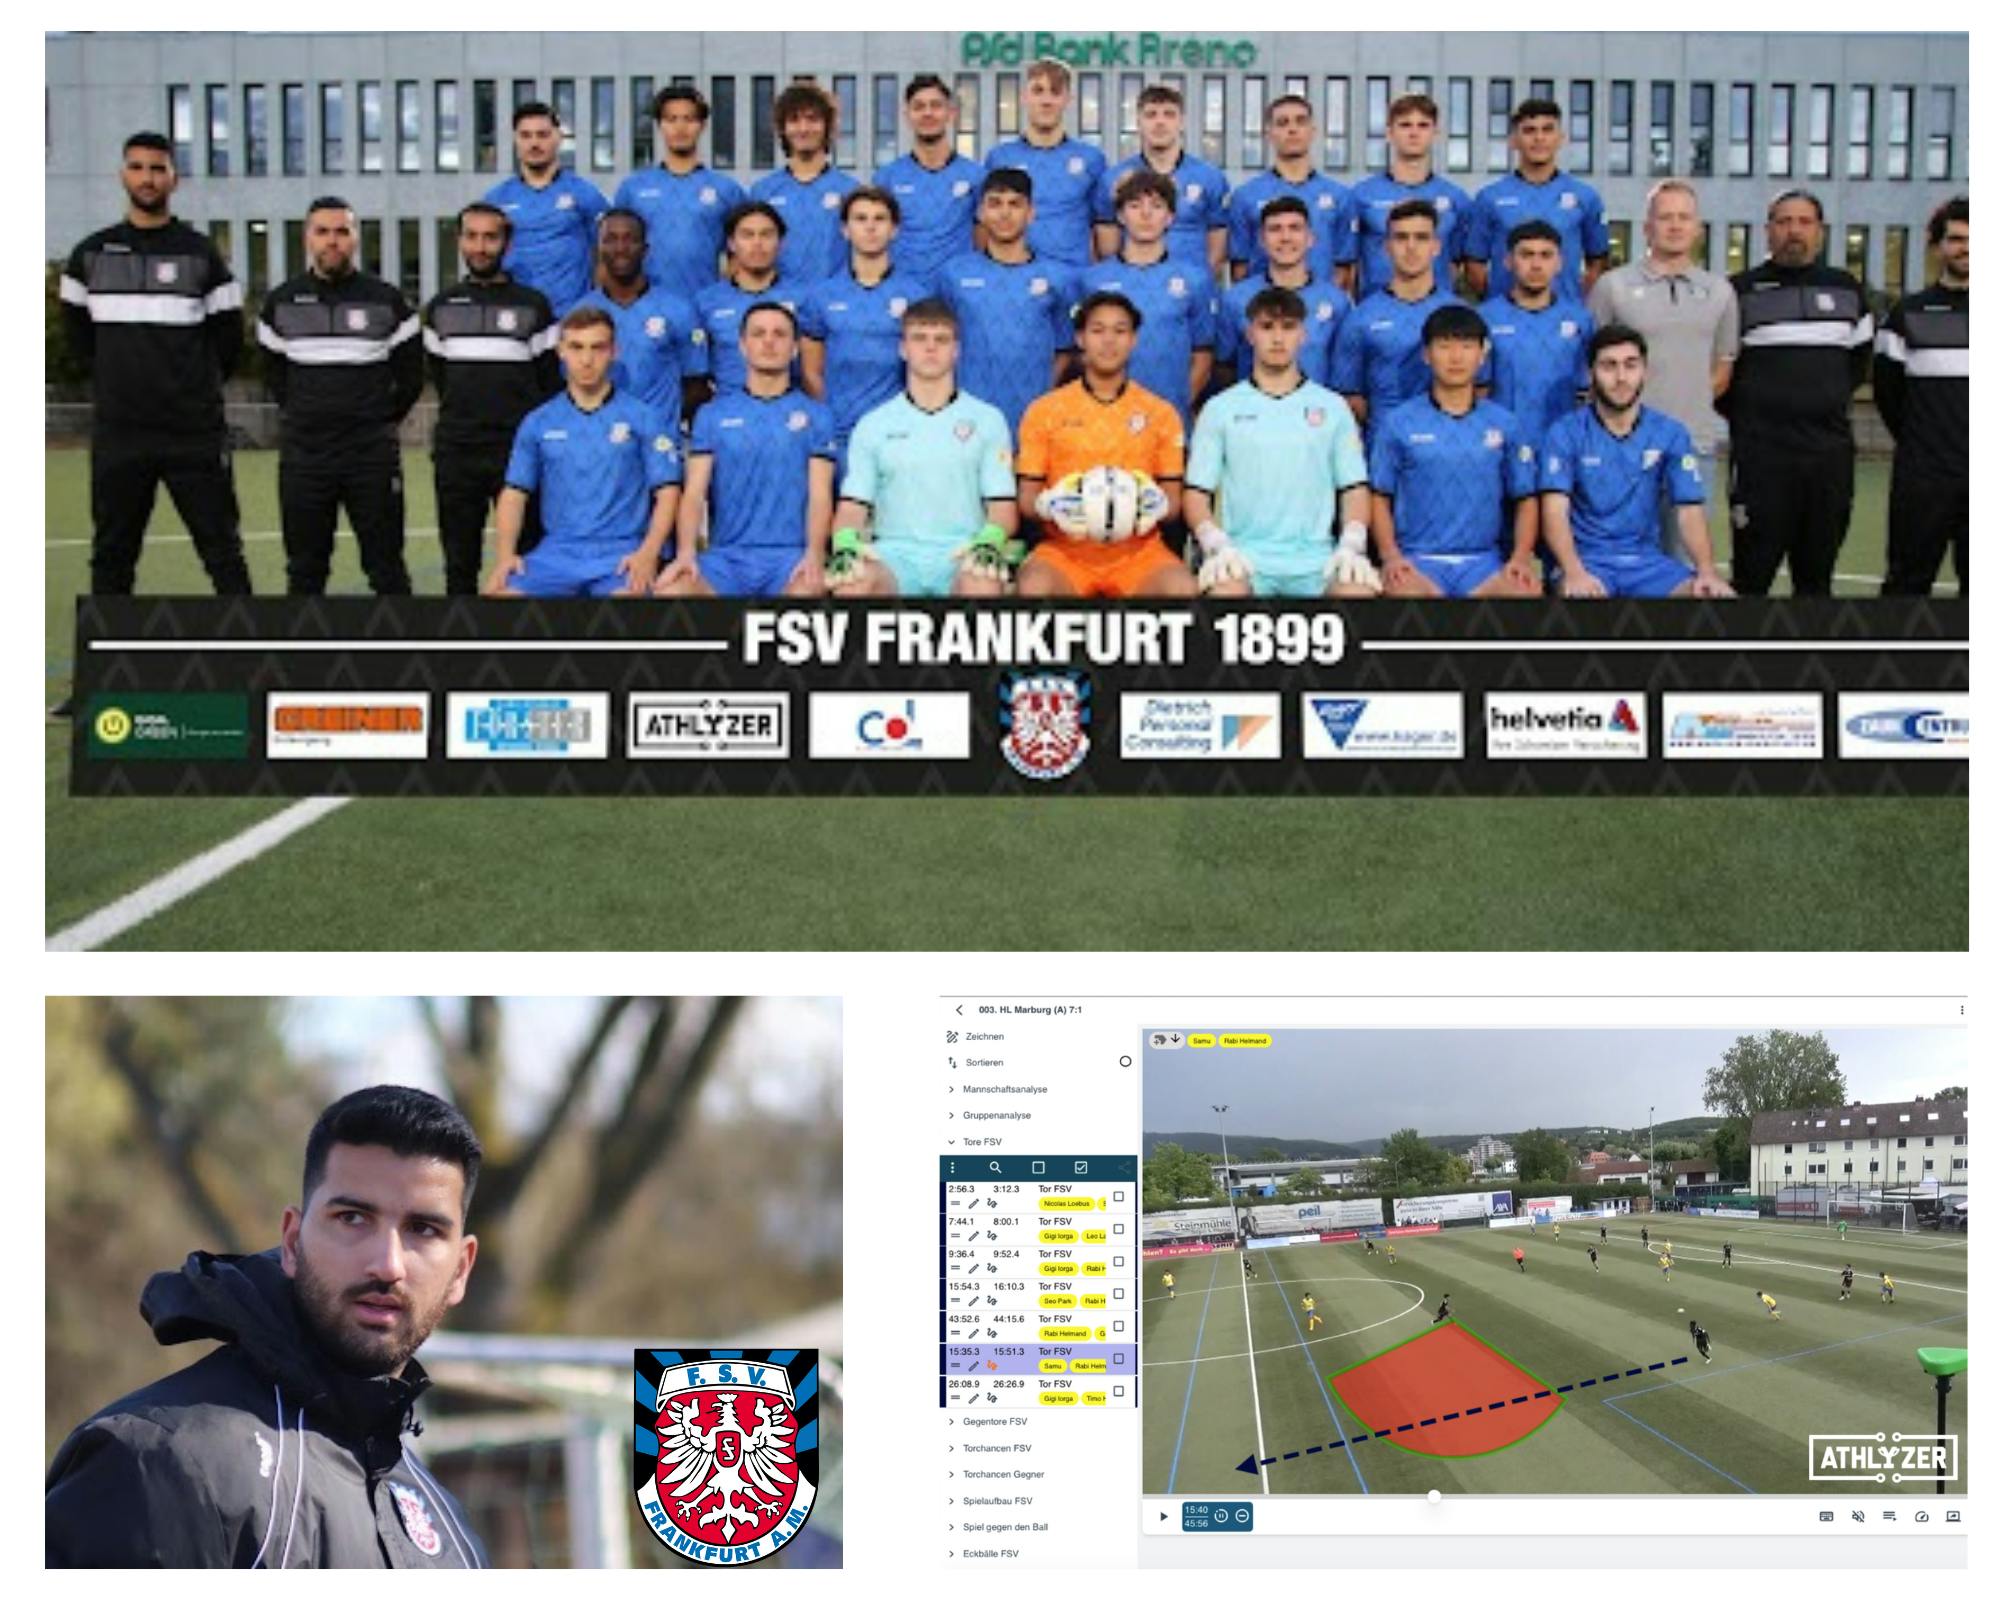 FSV Frankfurt, Spielanalyse mit Athlyzer